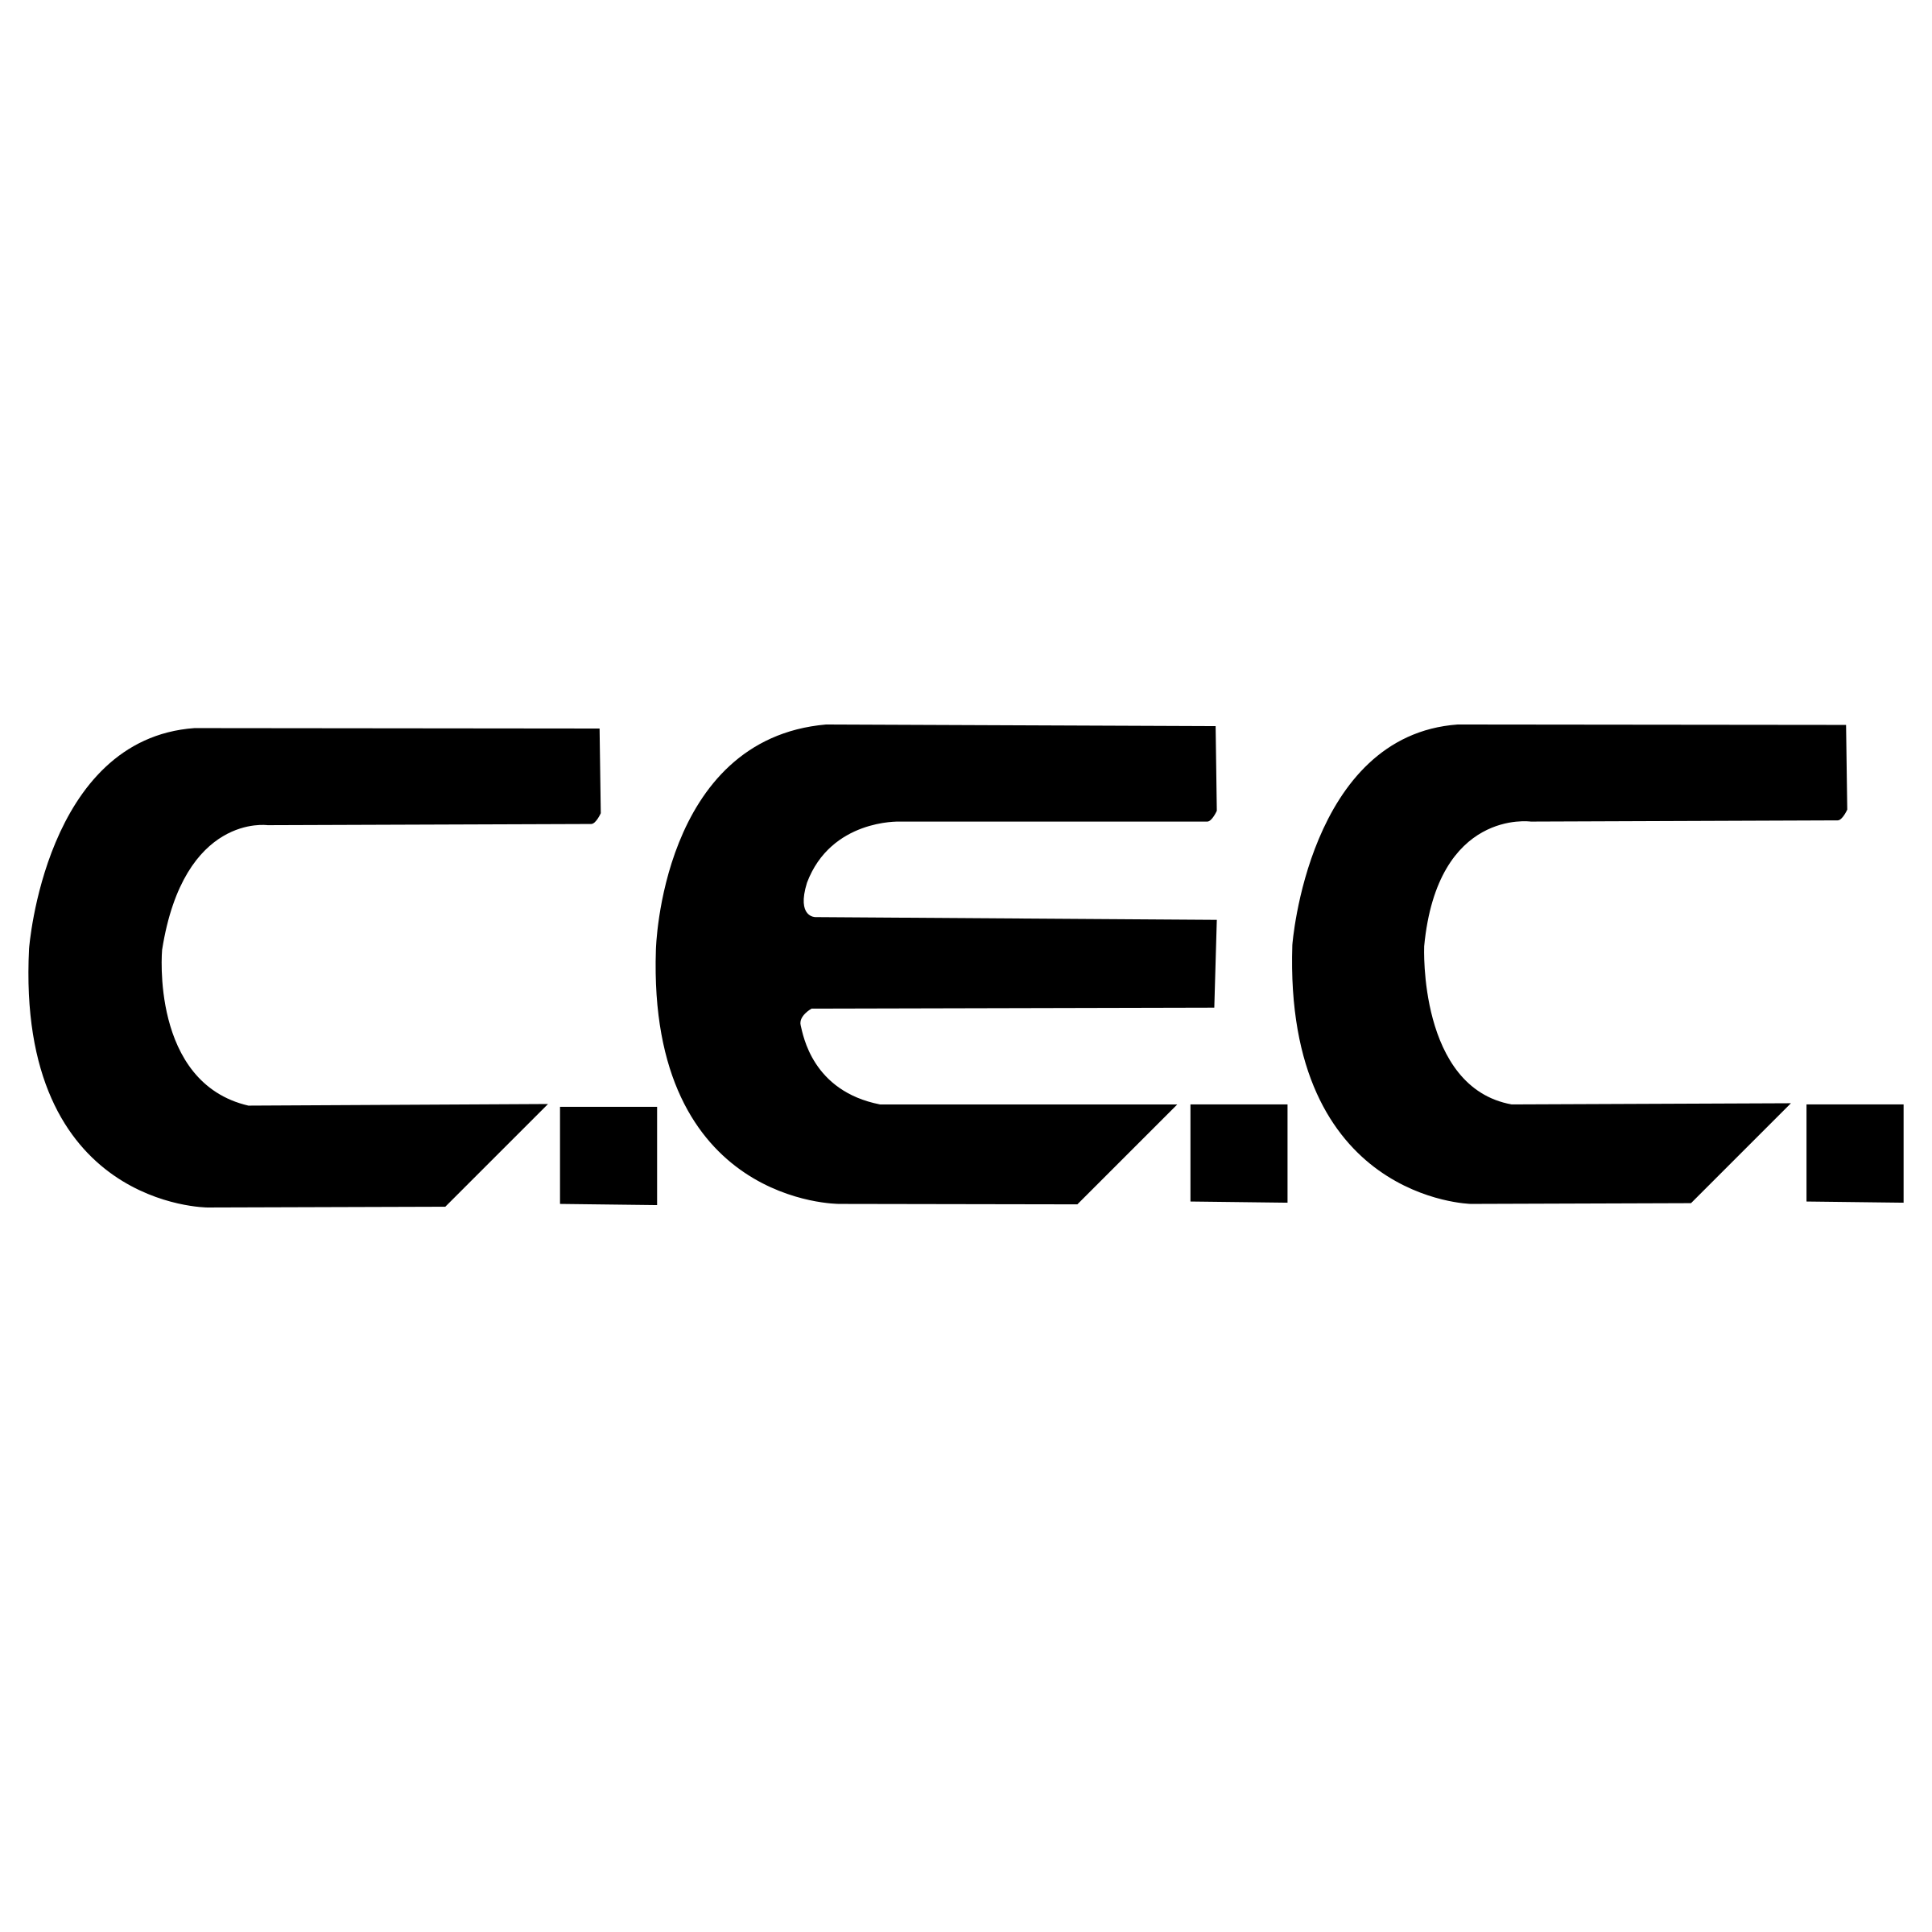 CEC Logo - CEC Logo PNG Transparent & SVG Vector